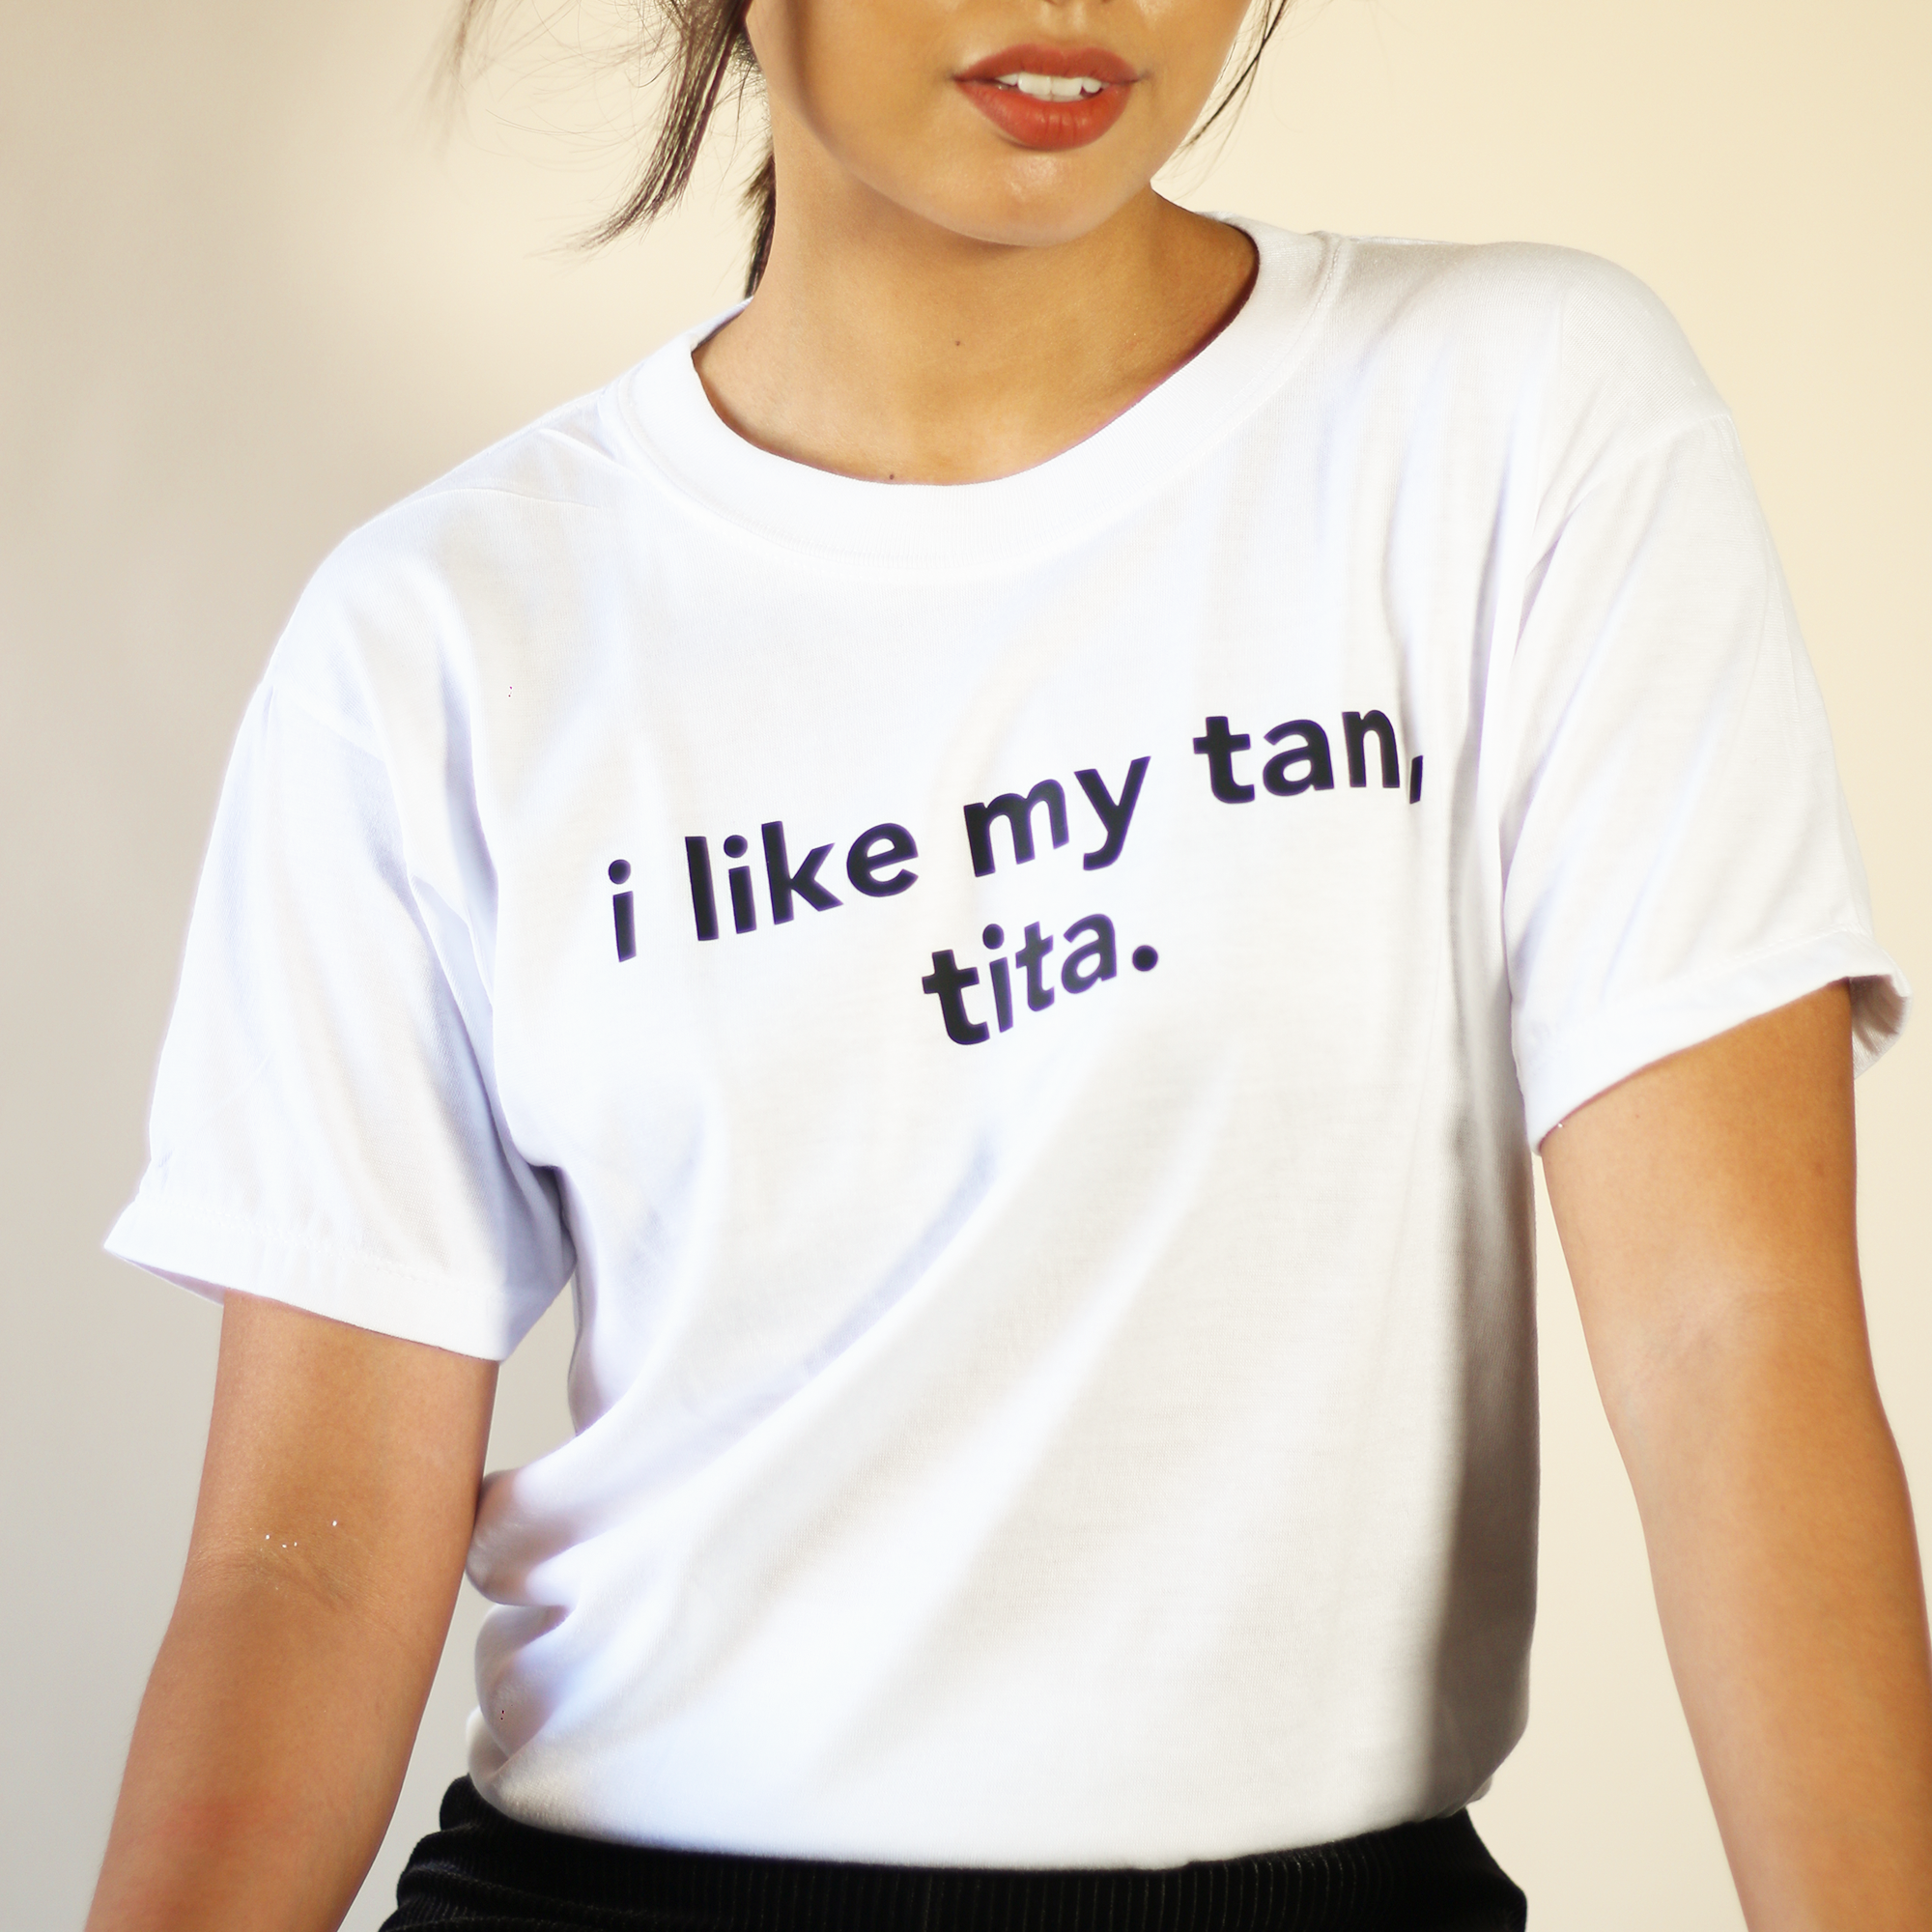 I Like My Tan, Tita T-Shirt